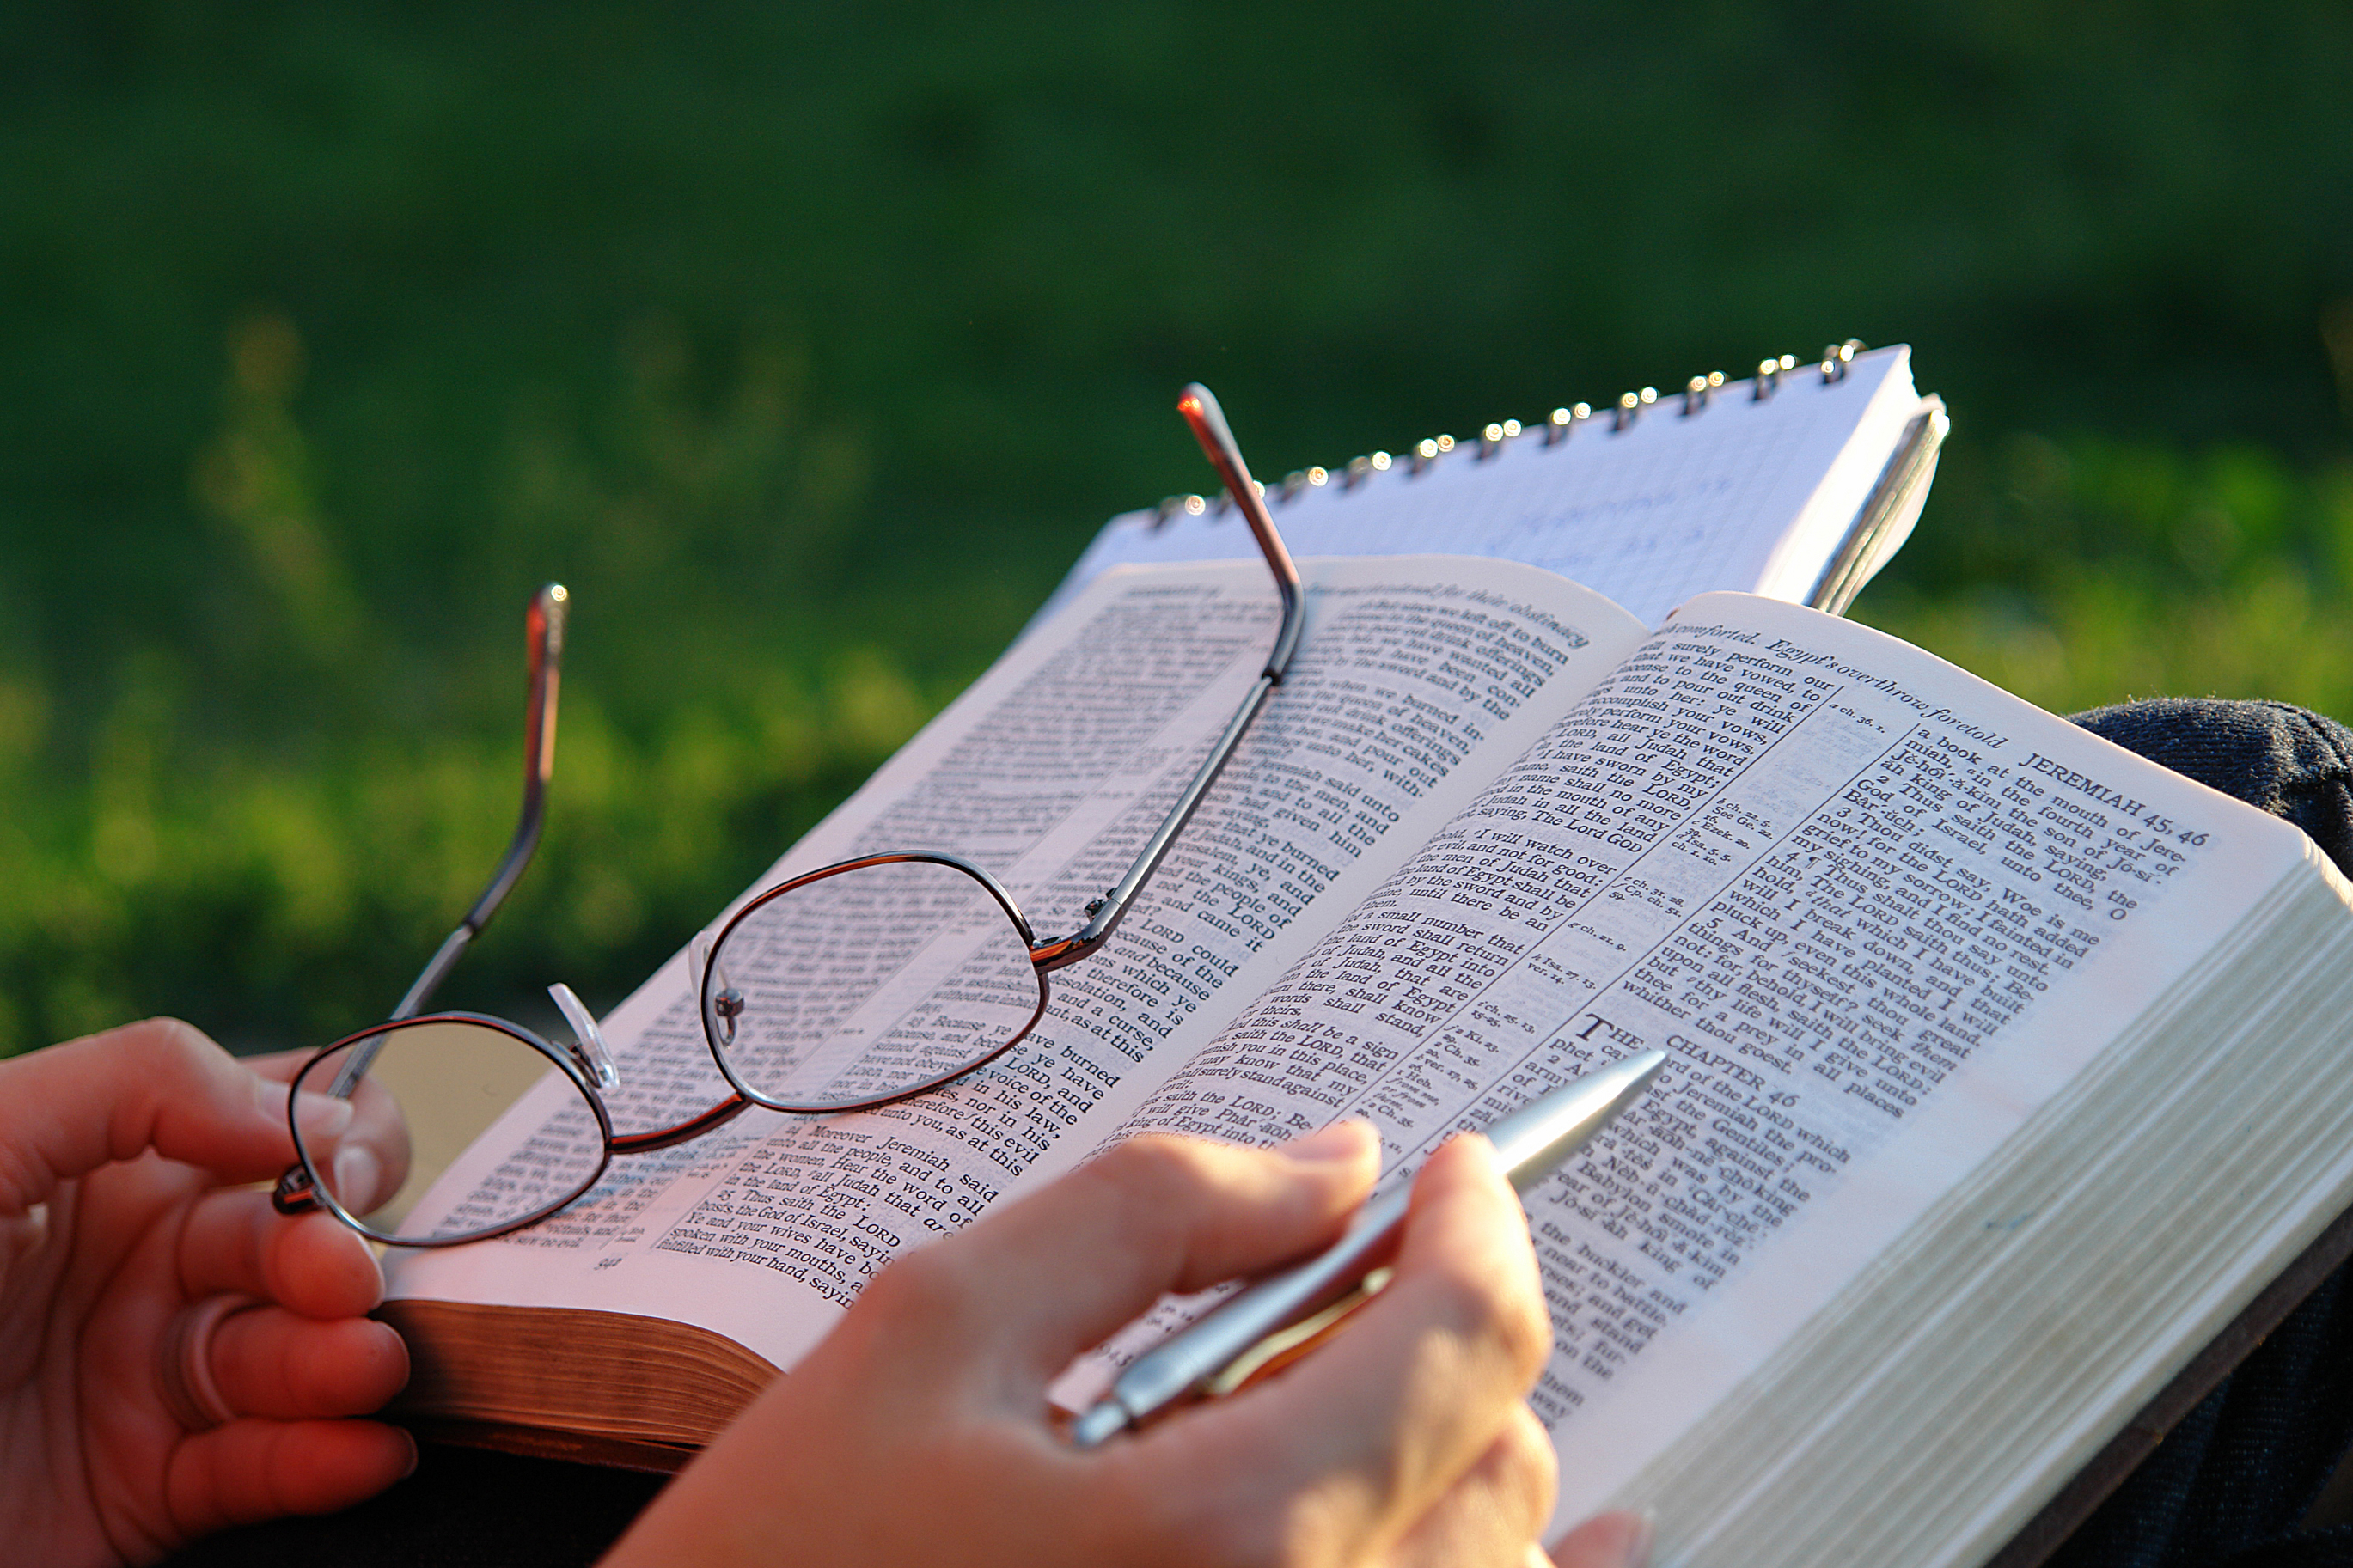 Слово божье книга. Изучение Библии. Открытая Библия. Священное Писание в руке. Человек изучает Библию.